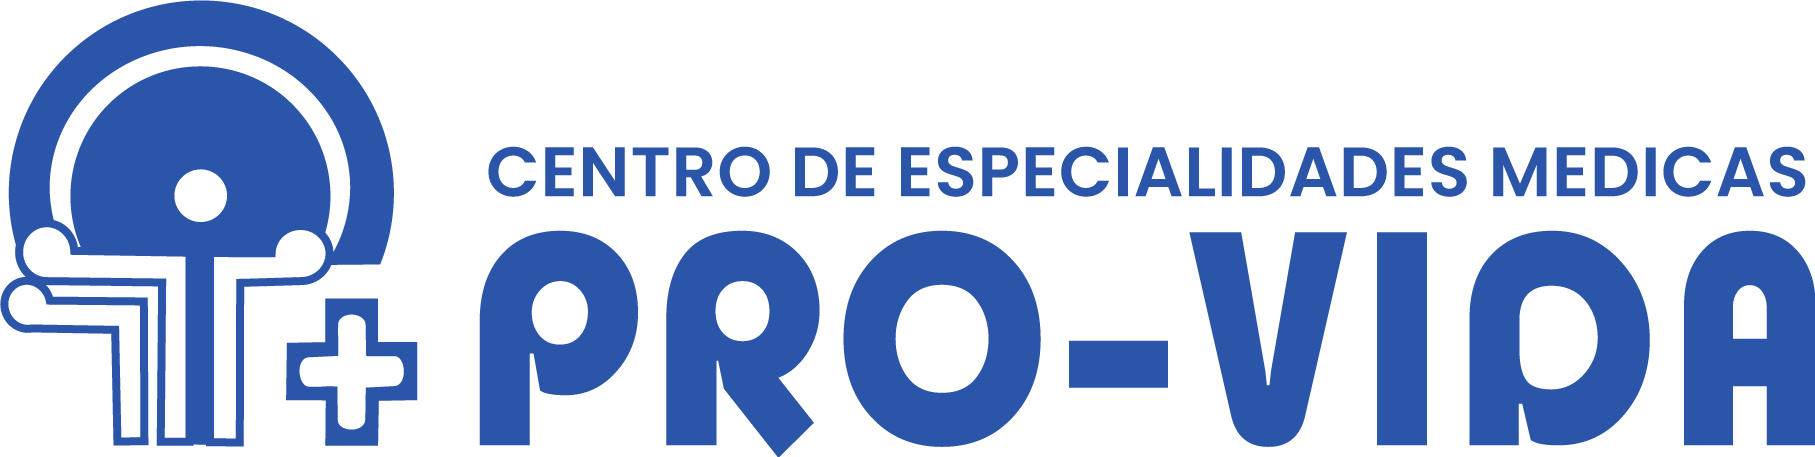 logo-CEM.png